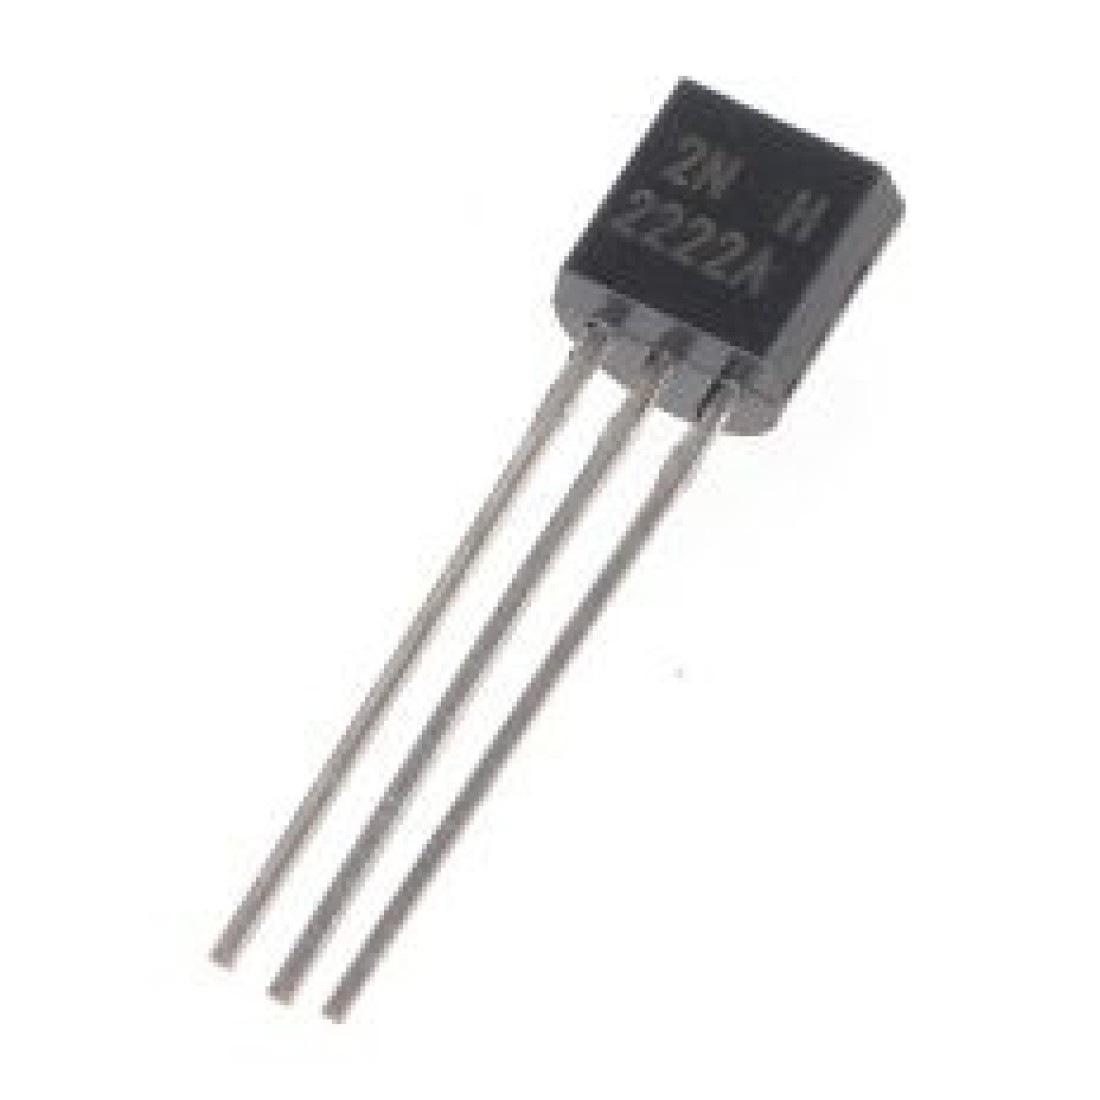 2n2222a transistor multisim